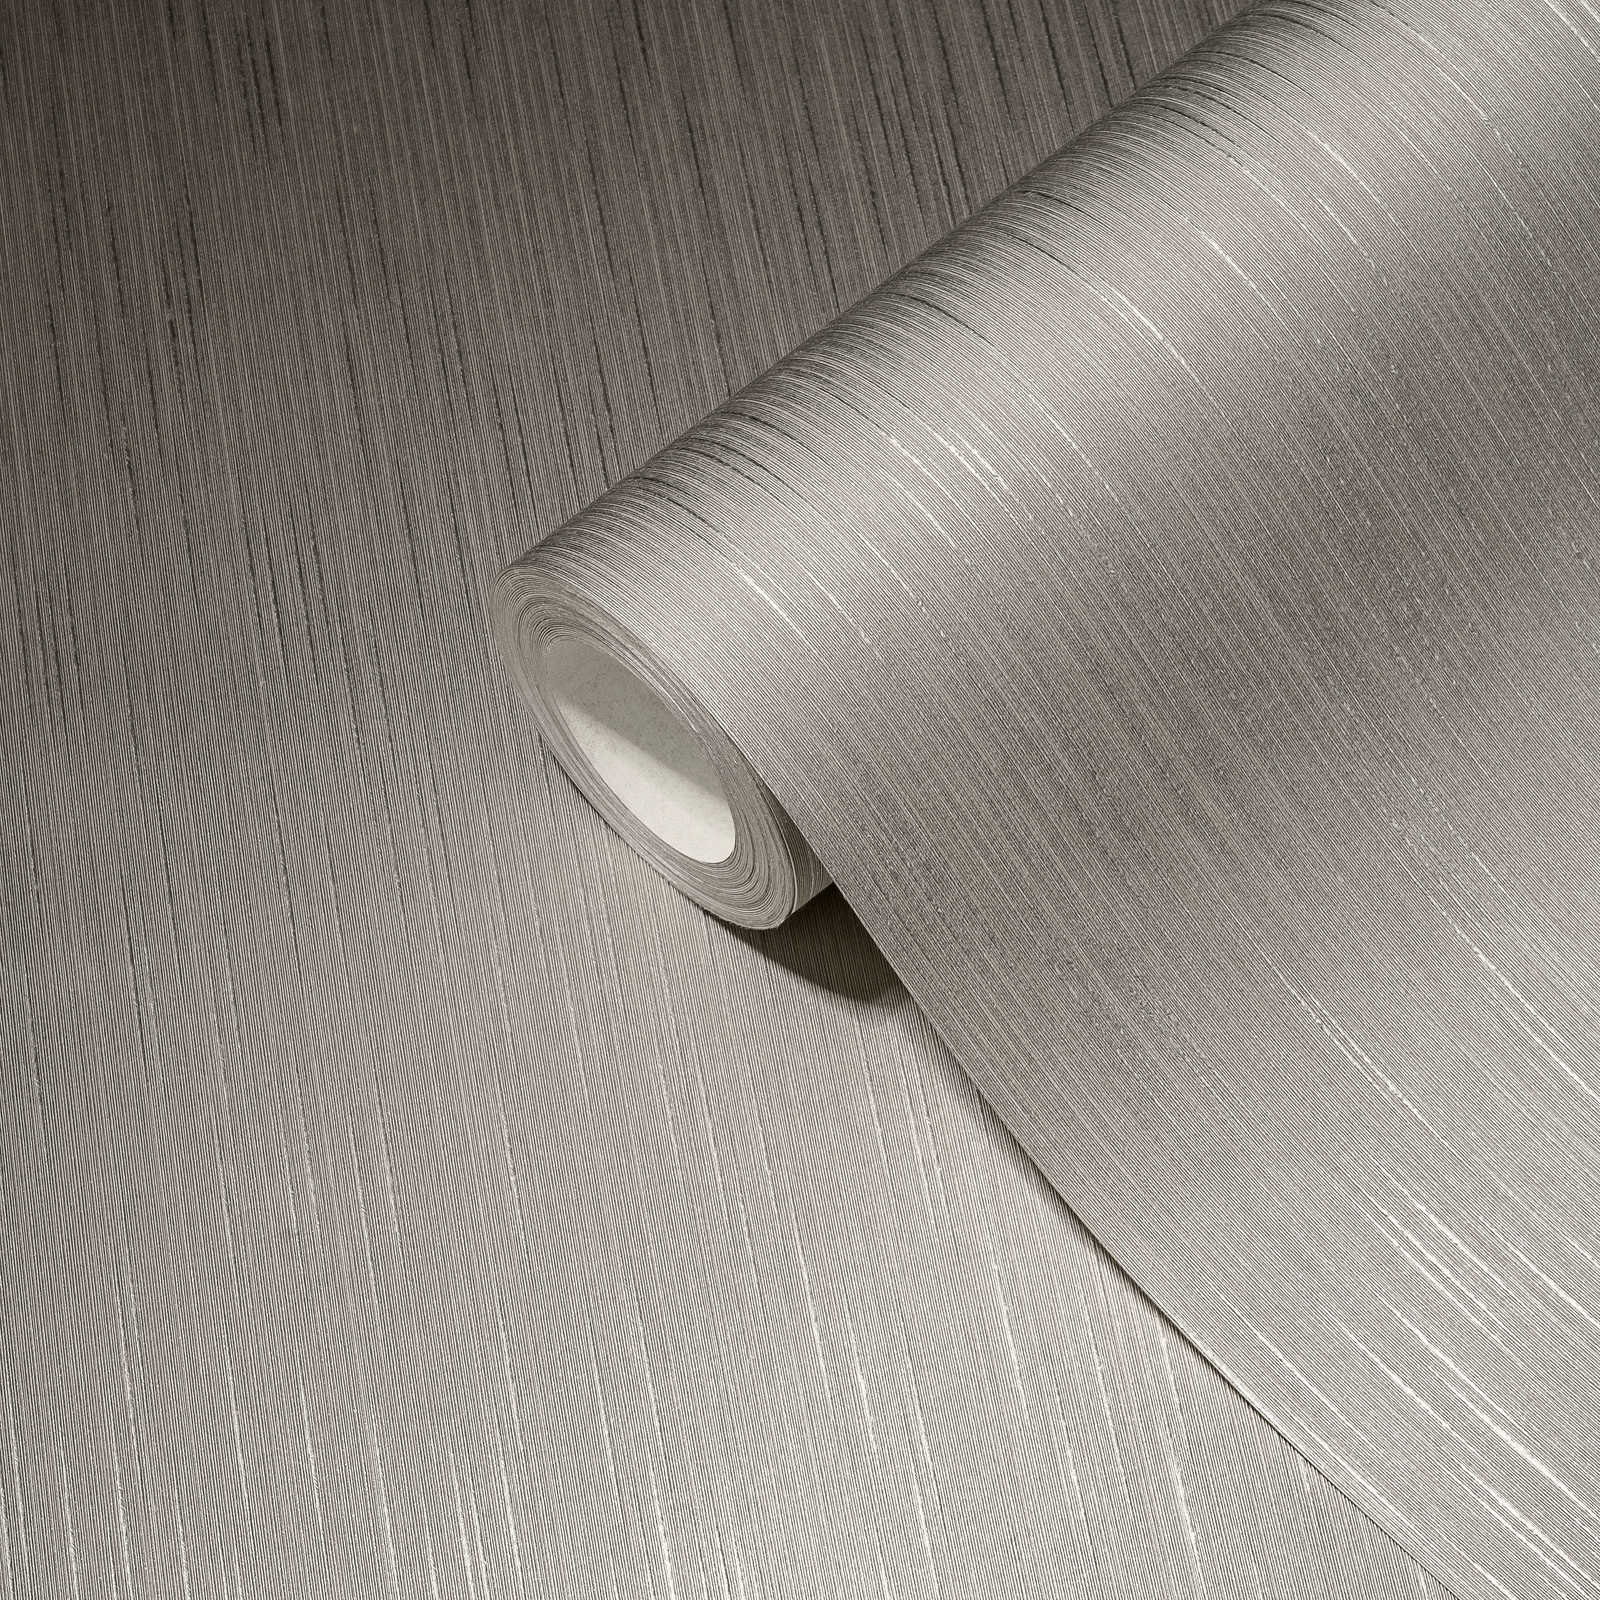             Papier peint gris avec effet textile chiné & finition satinée
        